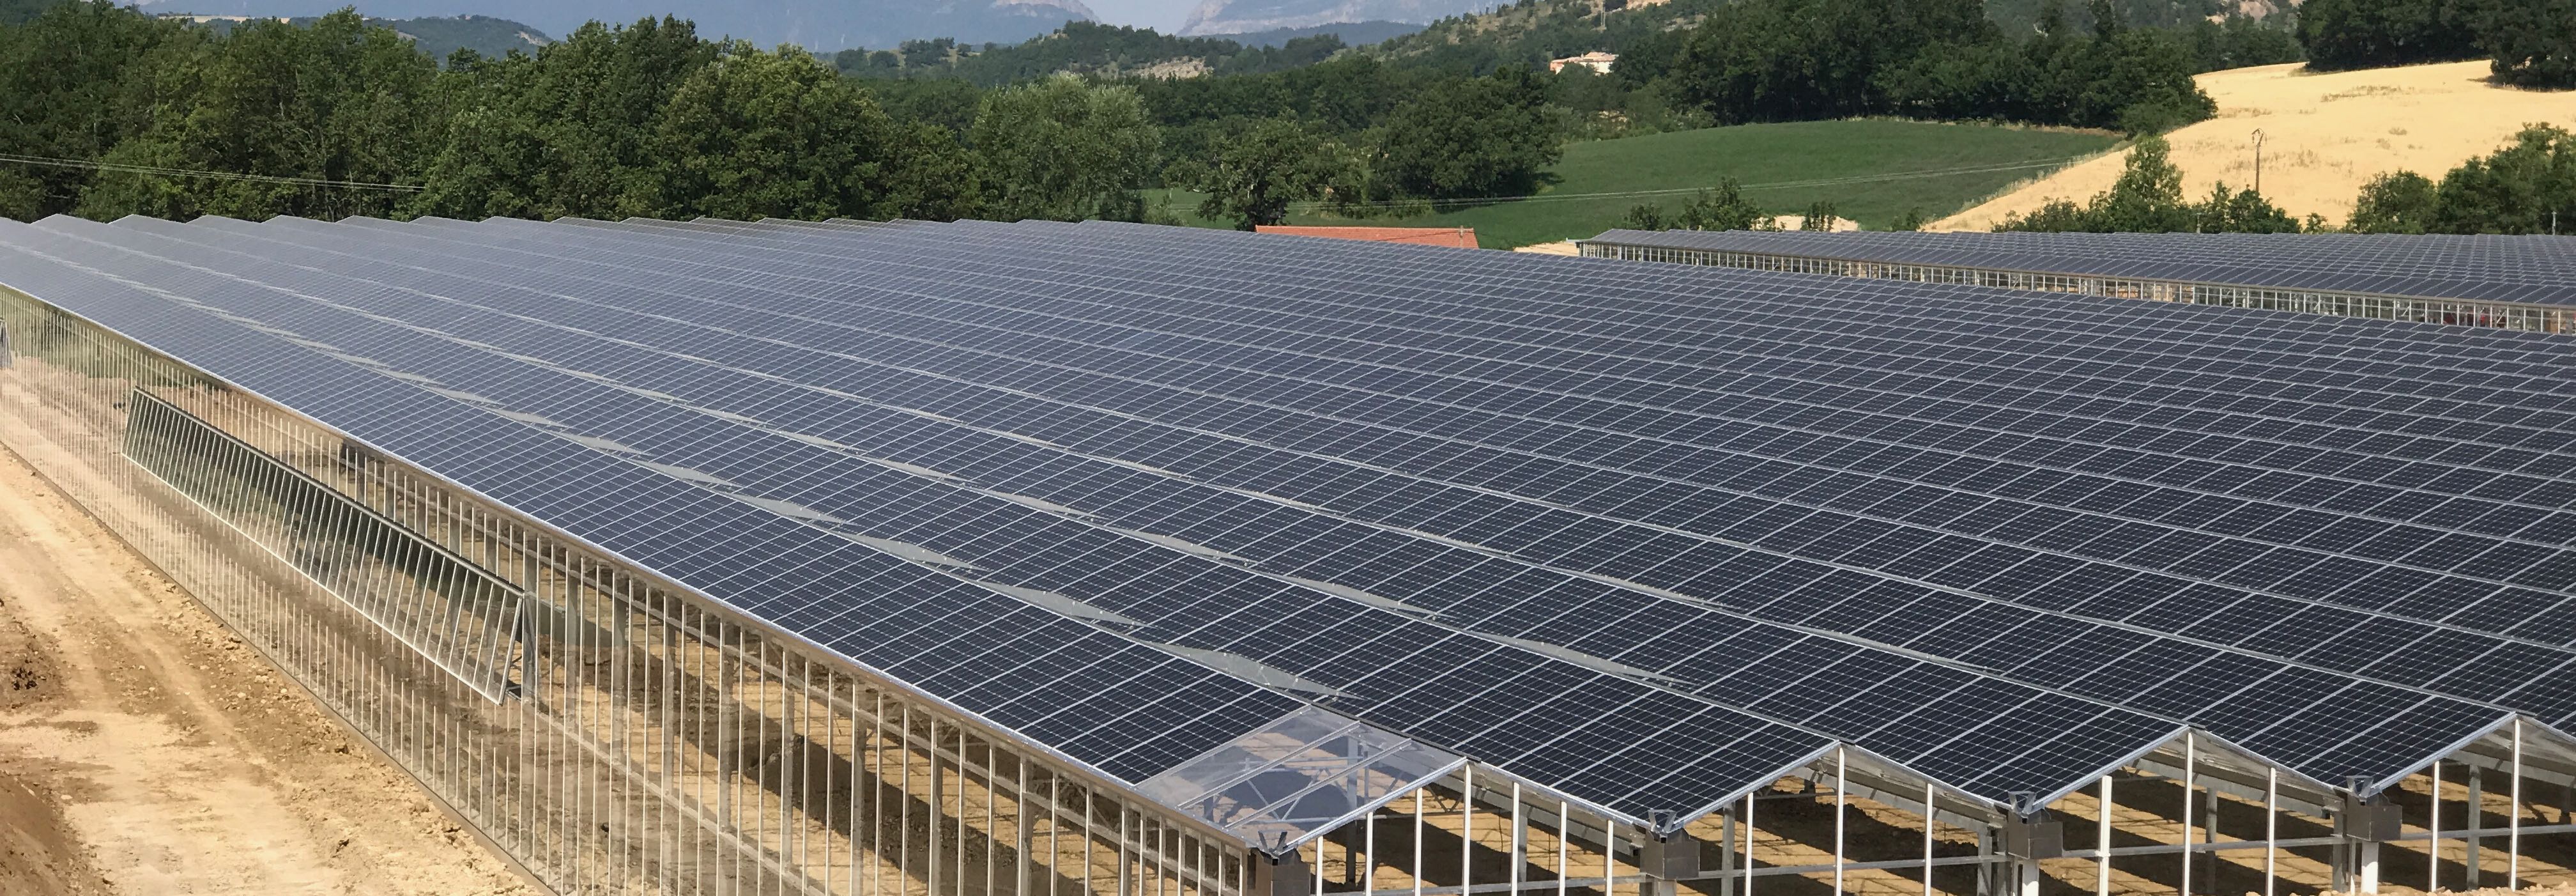 Invernaderos fotovoltaicos en Francia